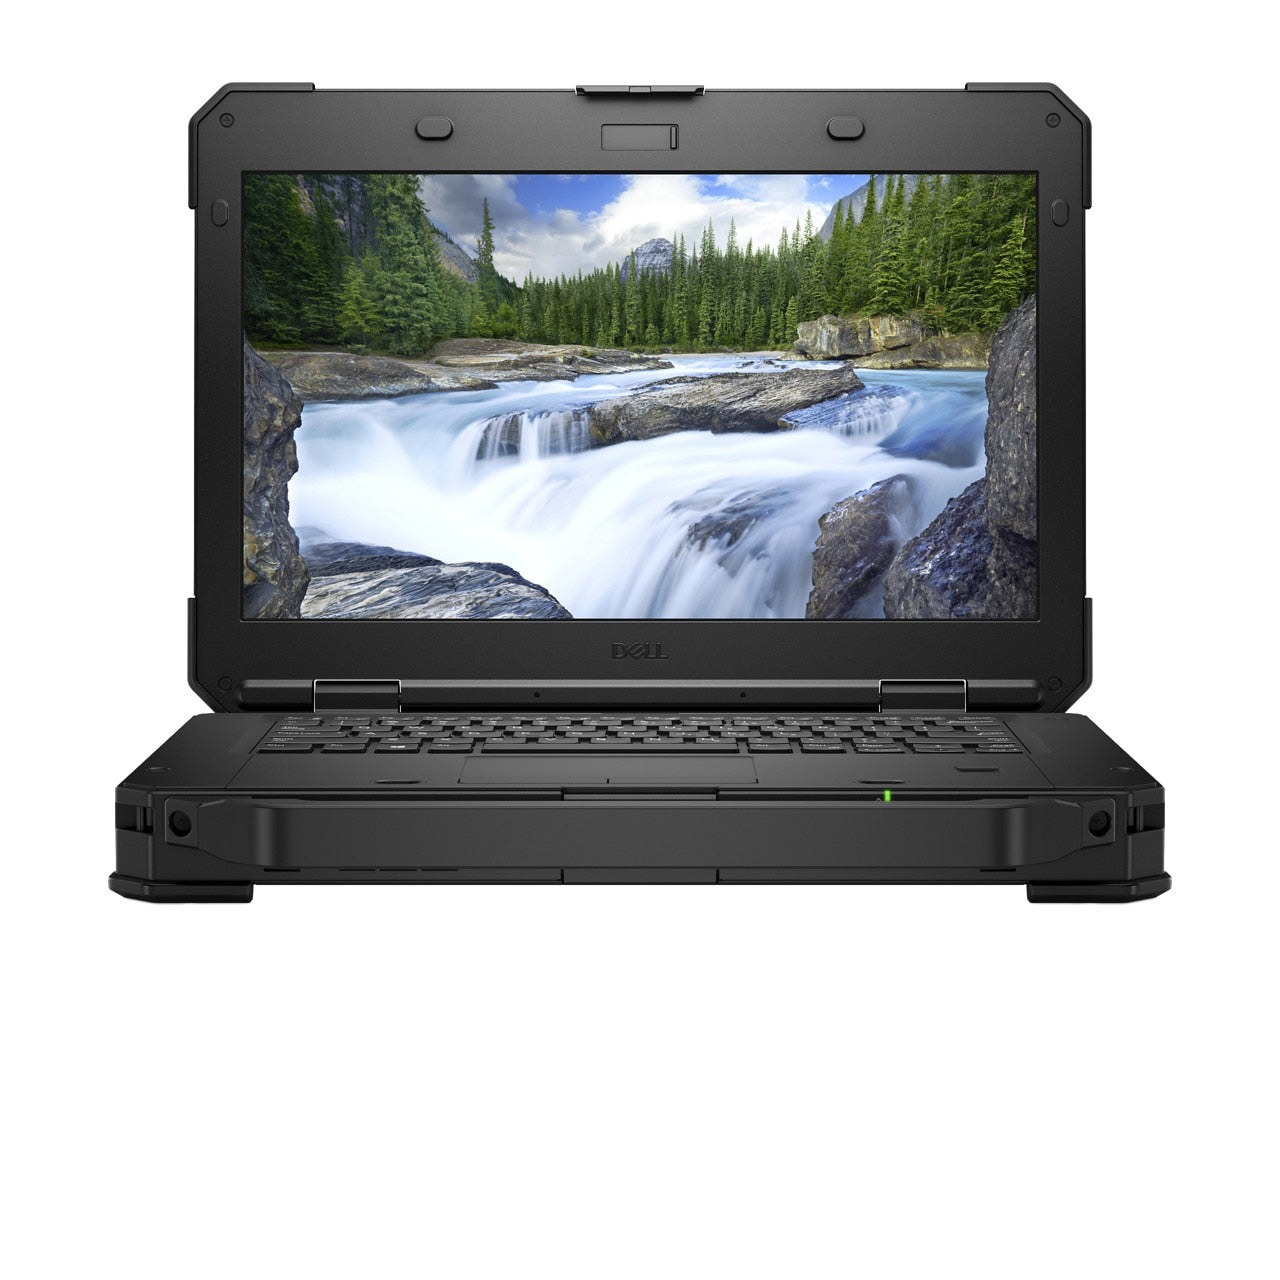 BSB-TCAY91IGFSGEJQXN-NEW-NEW-LAP-DL 2019 Dell Latitude Rugged 5424 Laptop 14" - i5 - i5-8350U - Quad Core 3.6Ghz - 500GB - 8GB RAM - 1920x1080 FHD Touchscreen - Windows 10 Pro Black